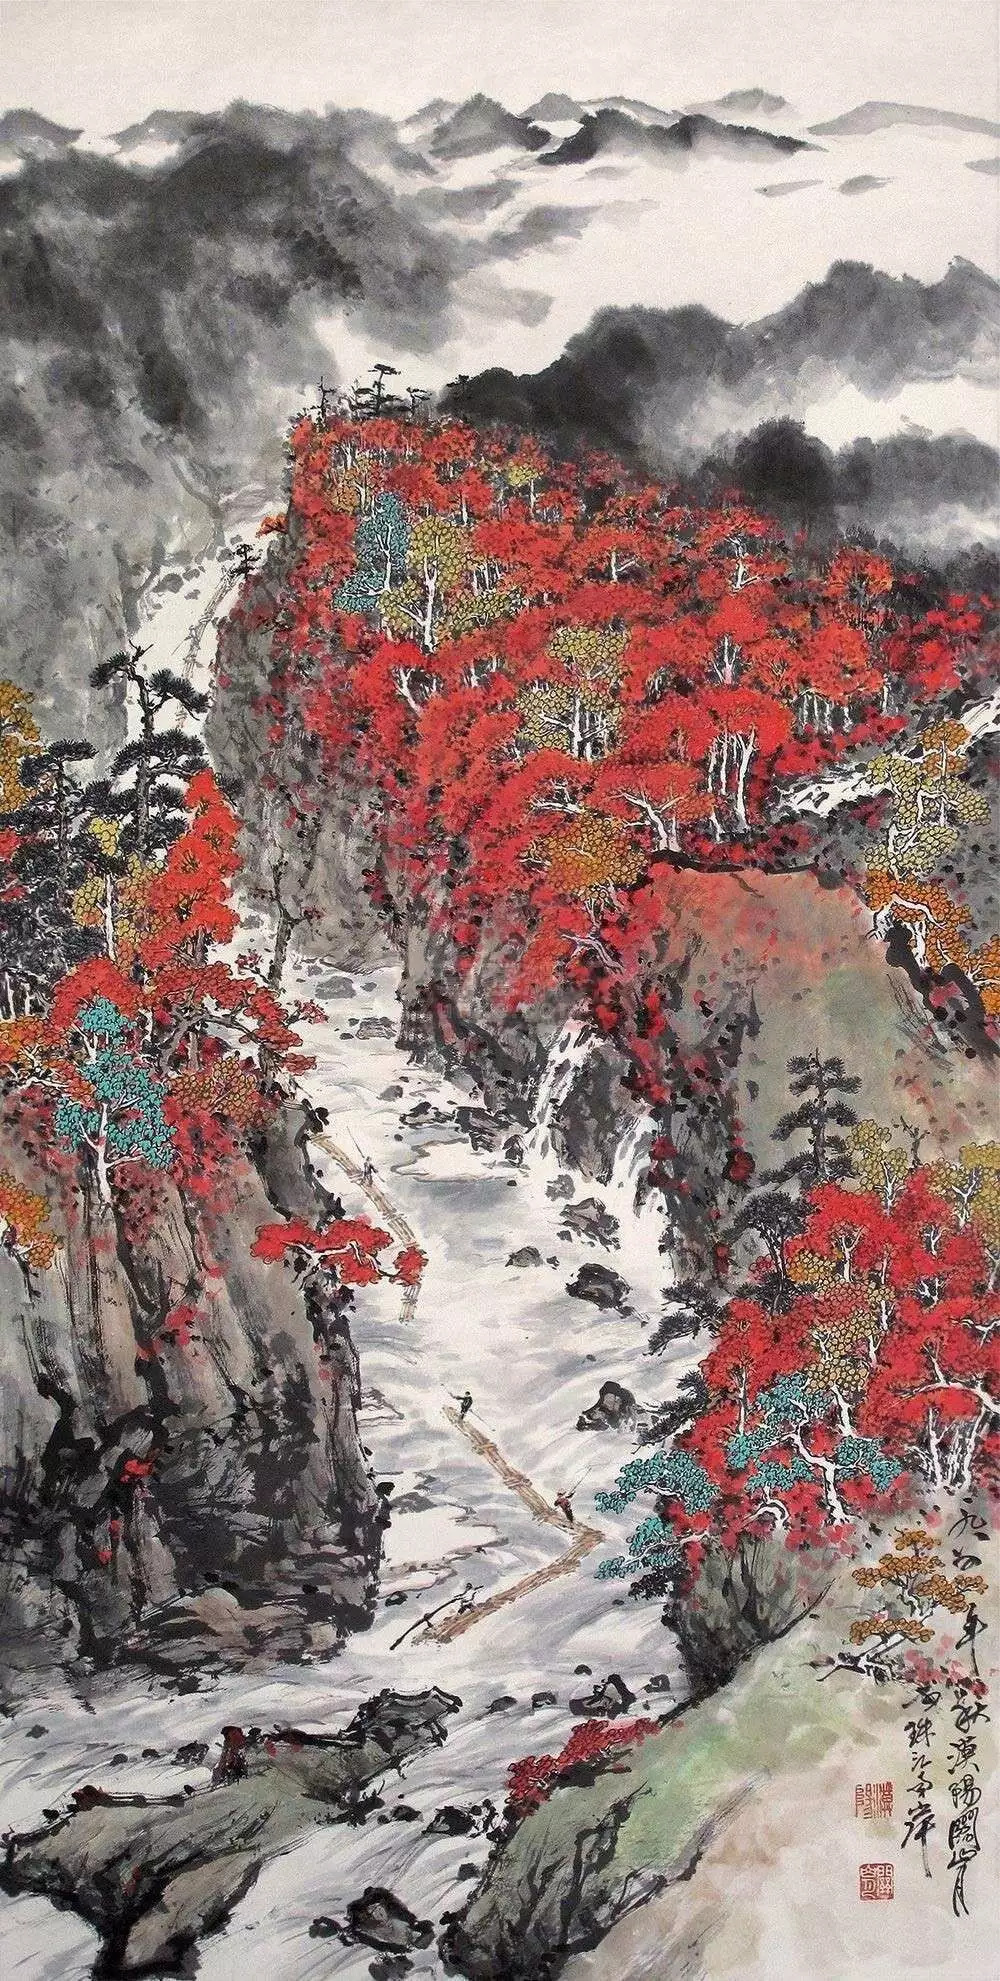 关山月是20世纪后半叶中国画坛上的主流画家之一,他的绘画艺术同中国